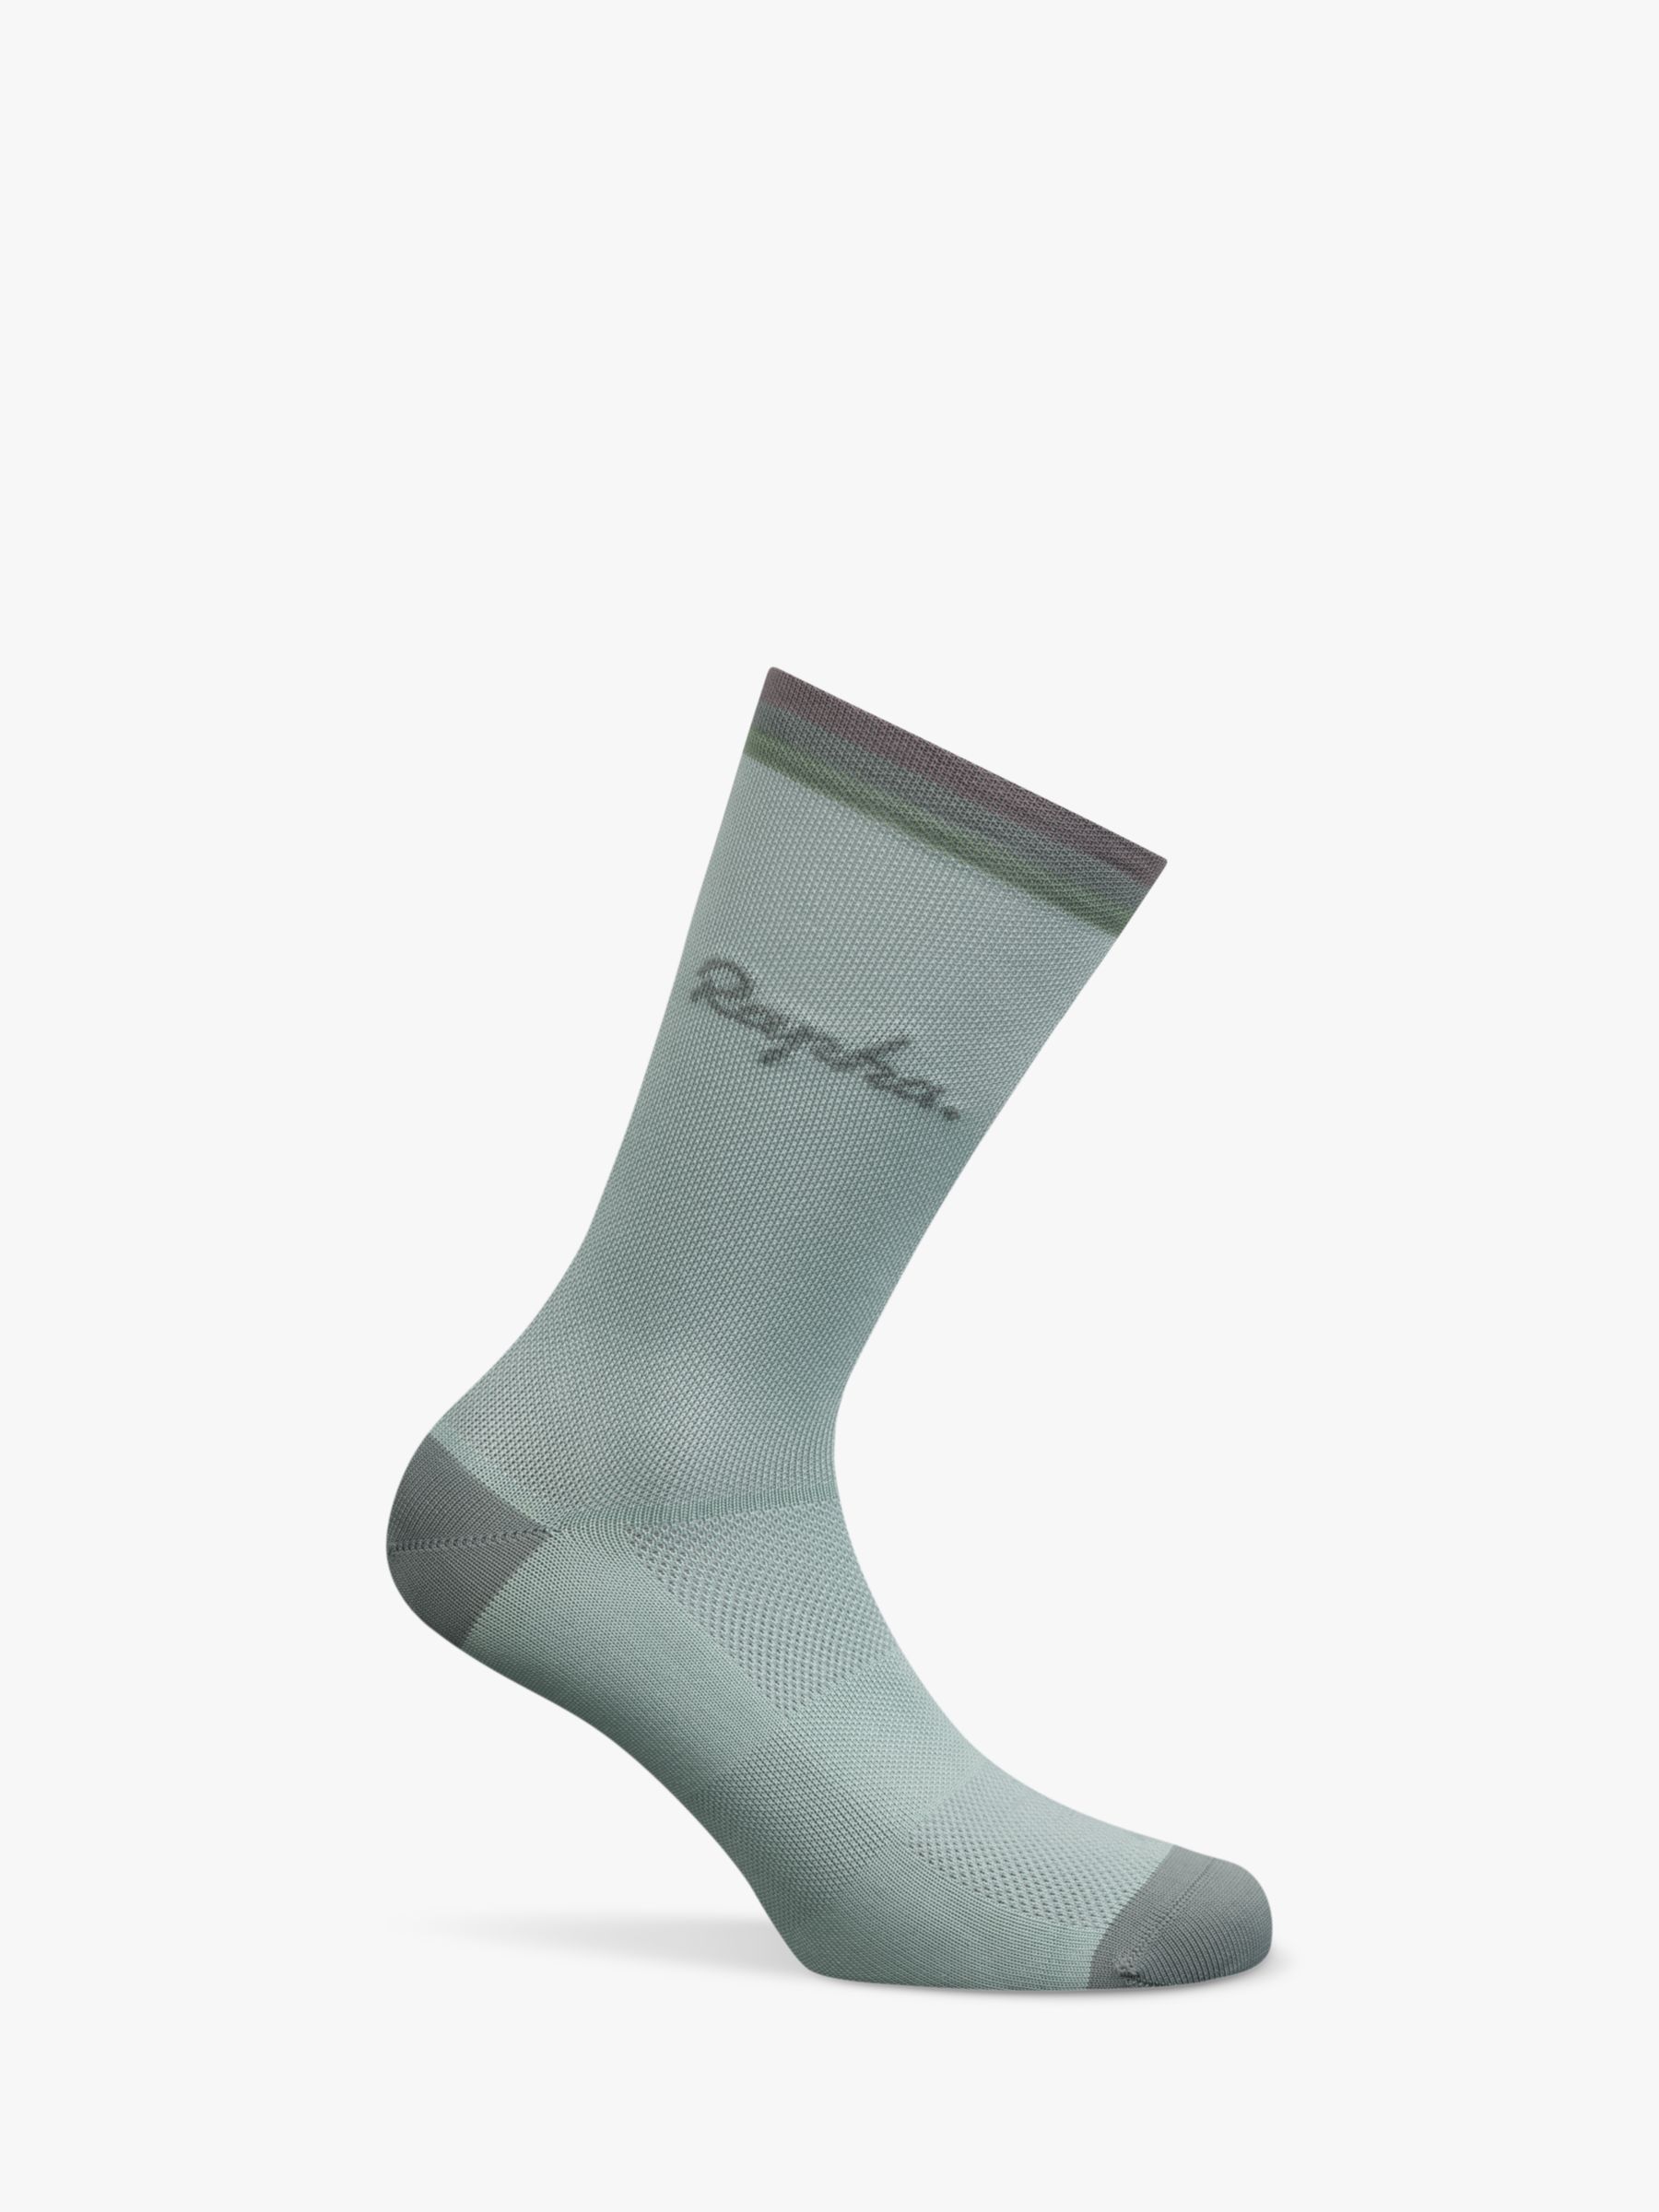 Rapha Classic Socks,  Green, S